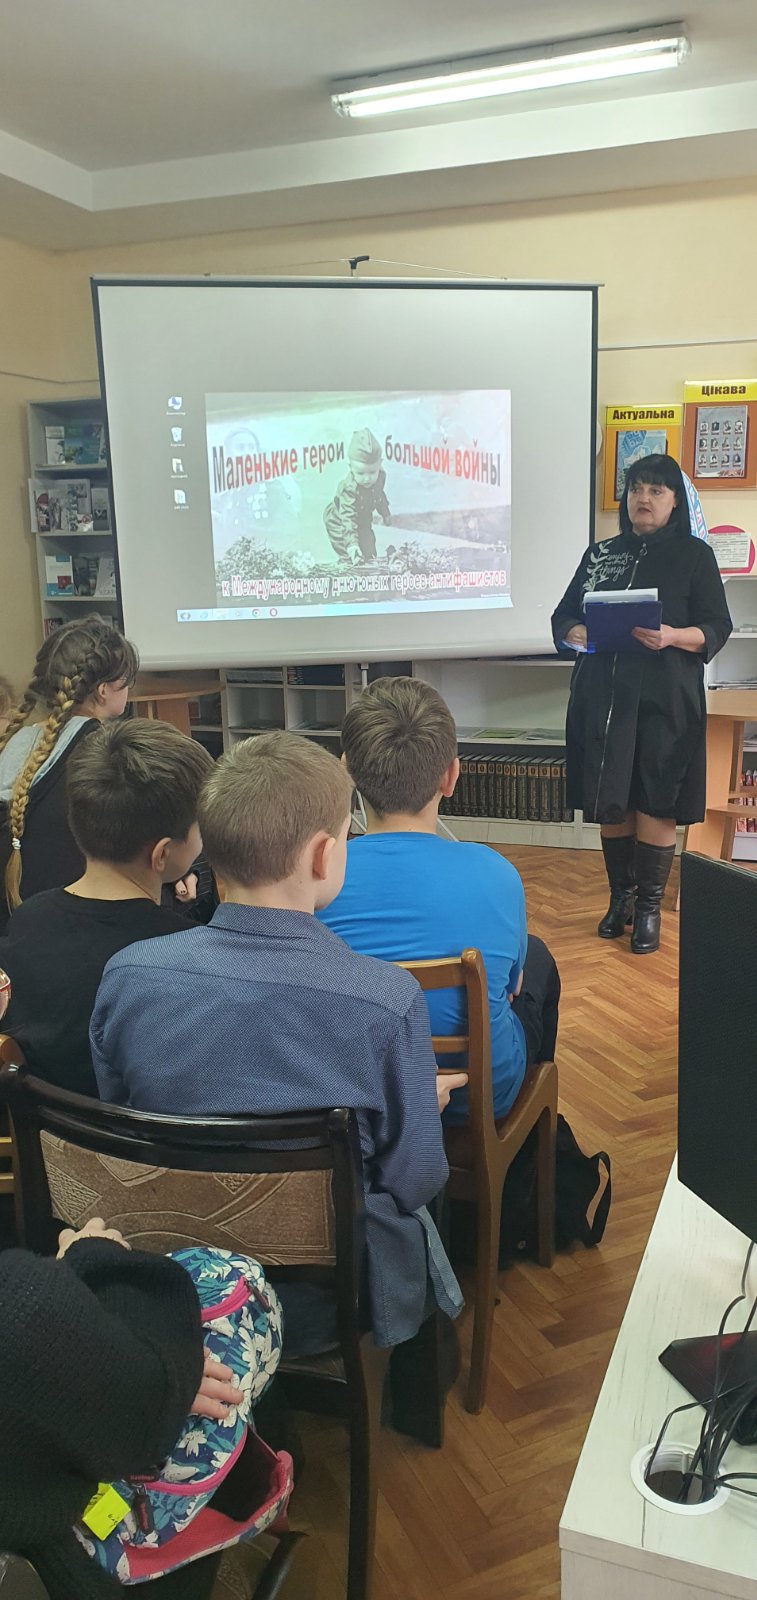 9 февраля — информационный час для учащихся 7а и 7б классов  был организован в ГУК «Волковысская районная библиотека»